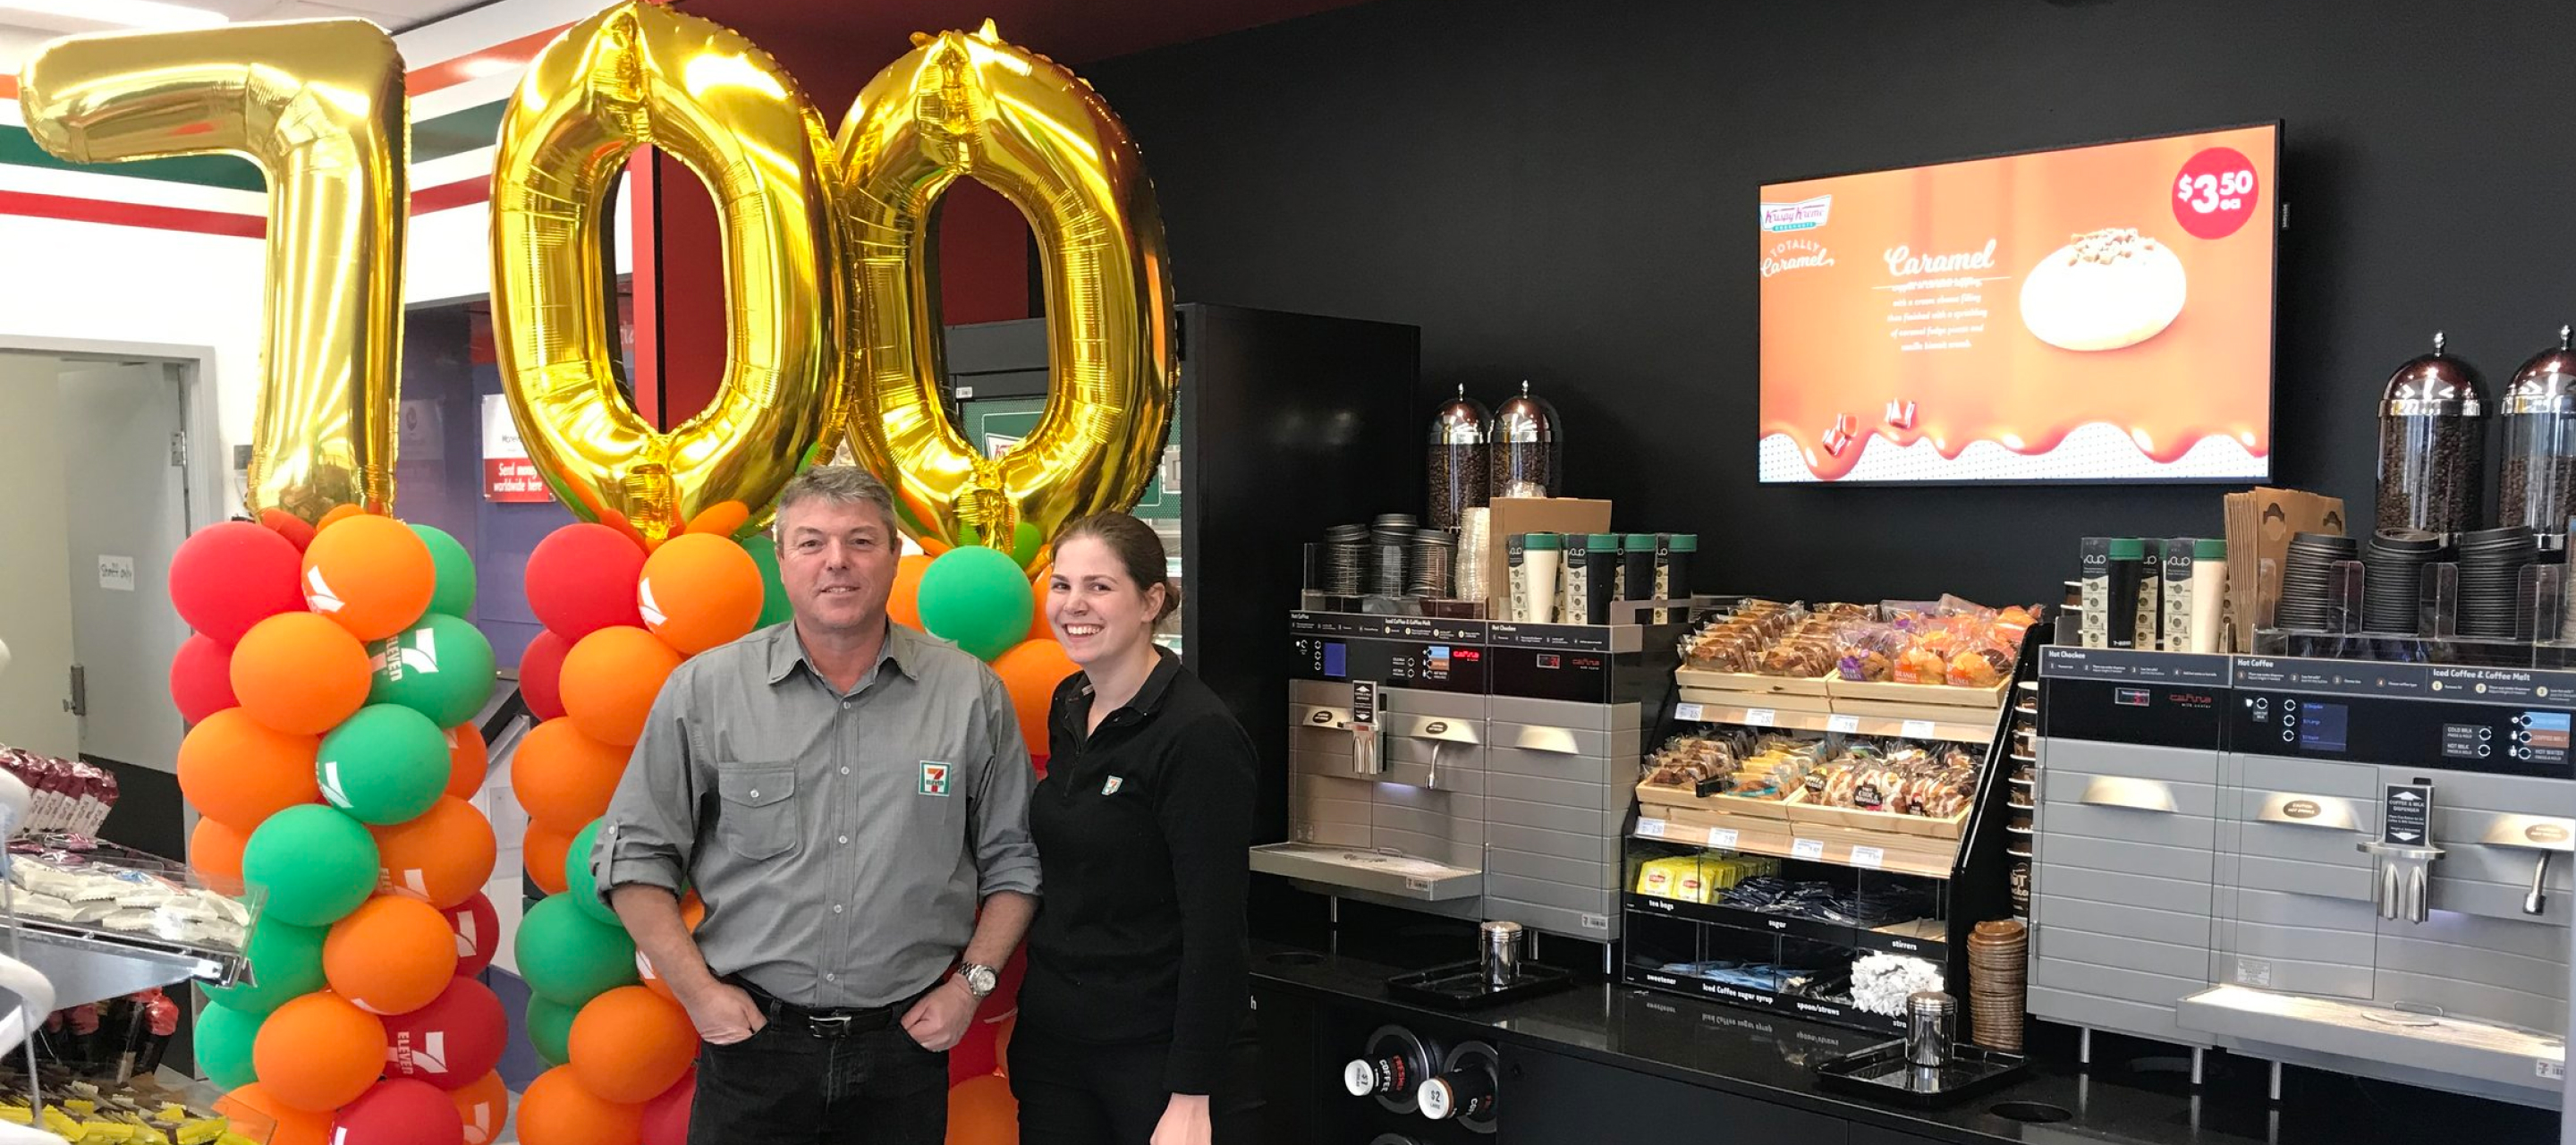 7Eleven Australia opens store 700